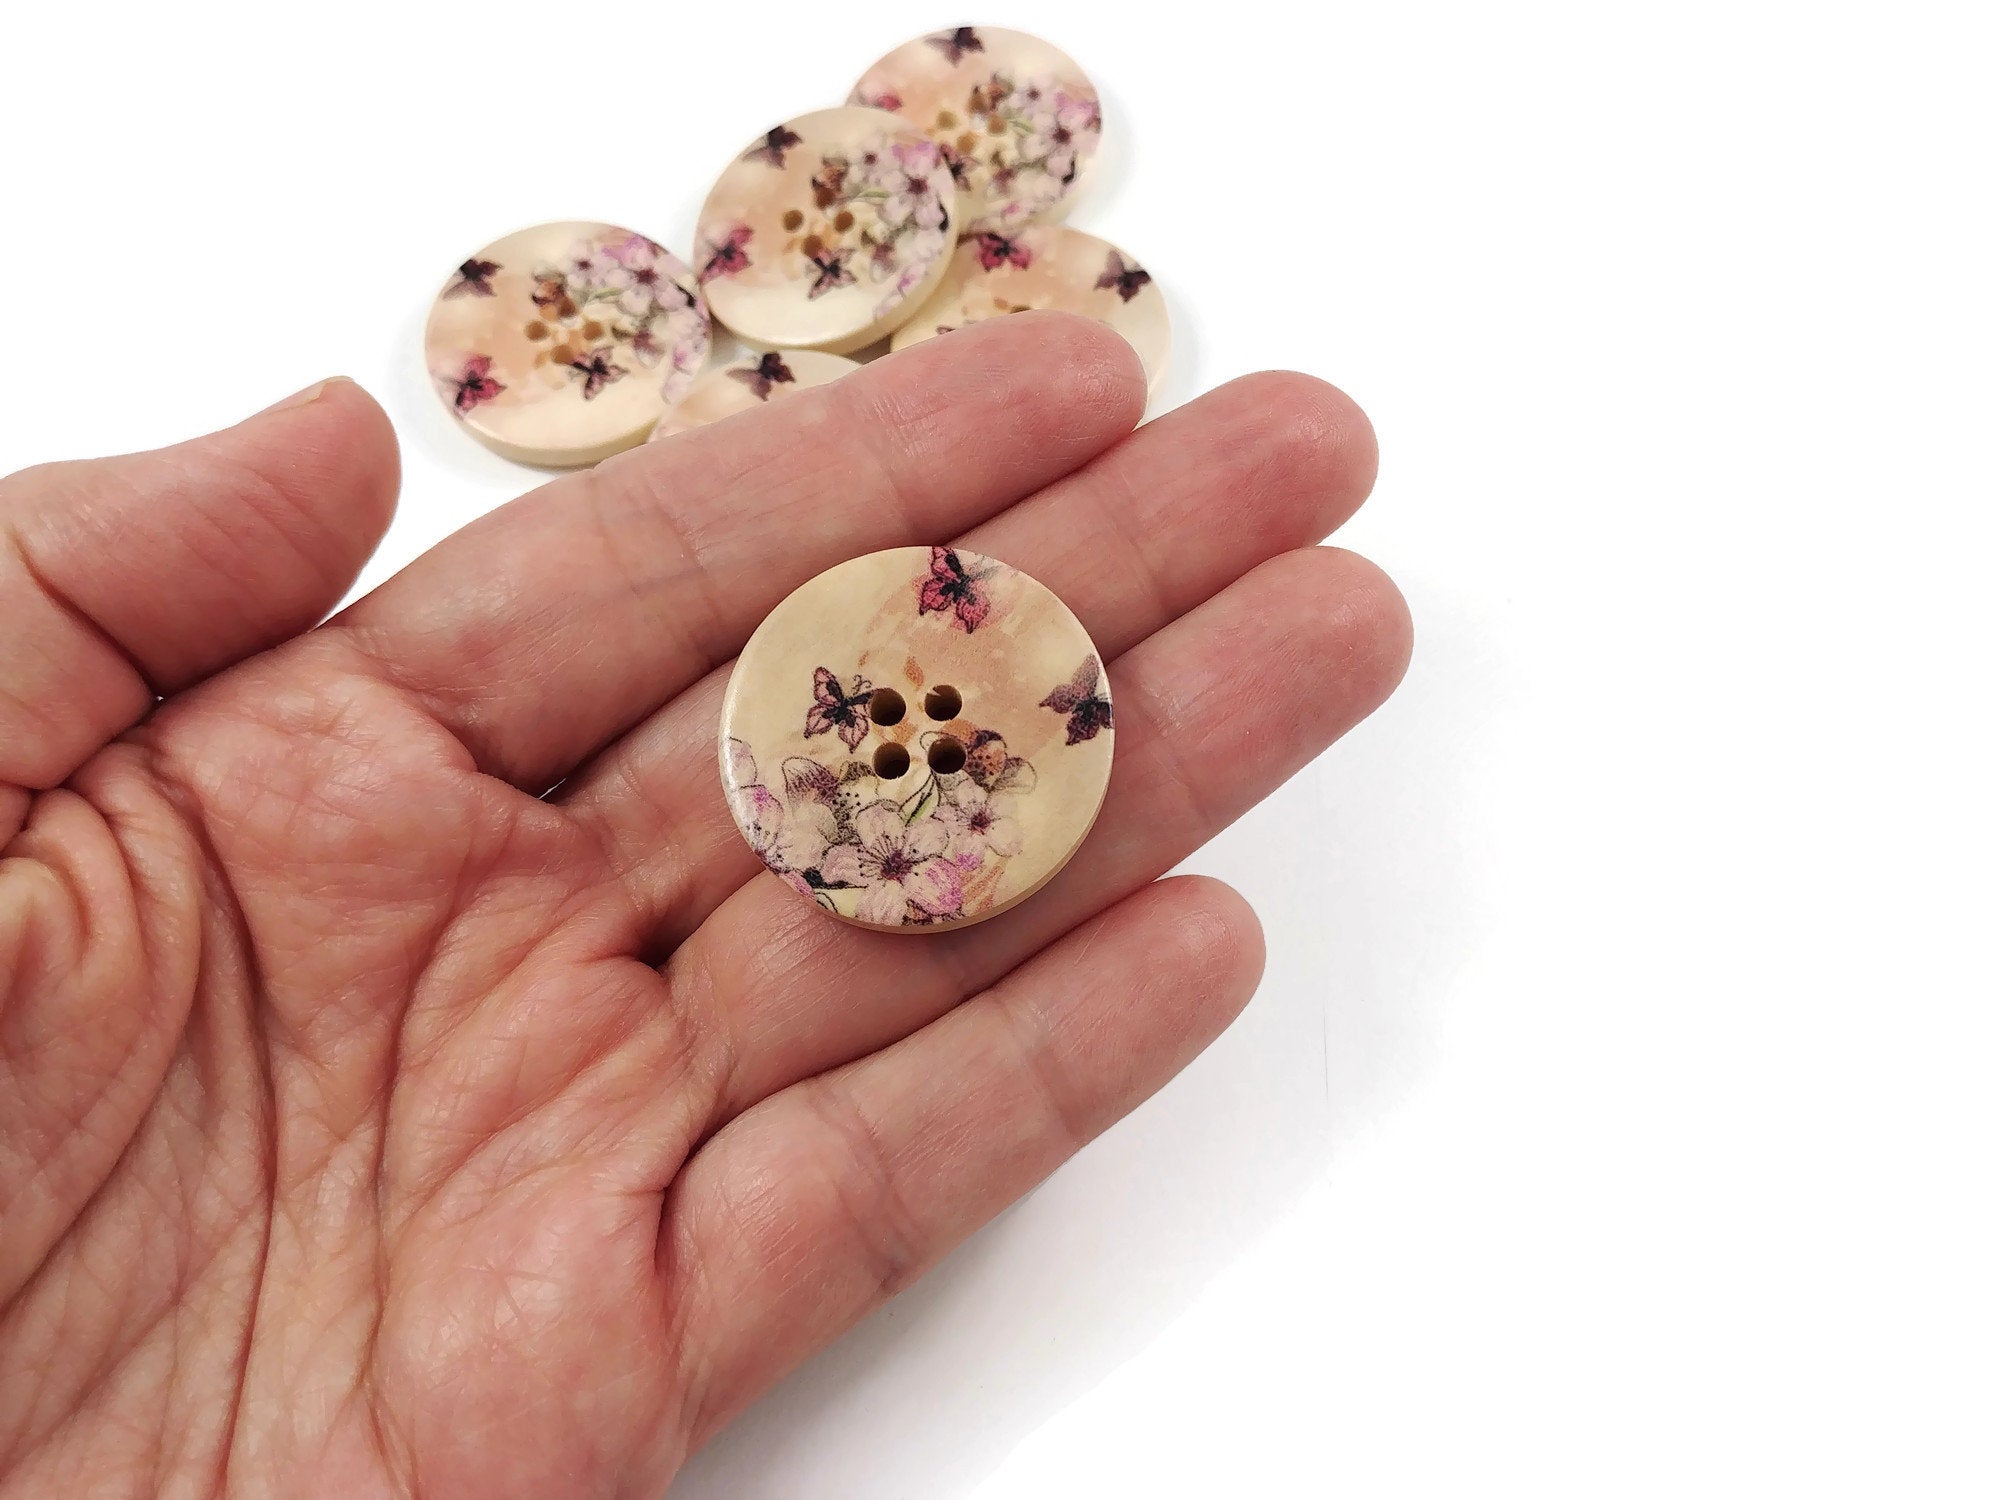 Bouton de bois avec motif floral - ensemble de 6 boutons de 3cm